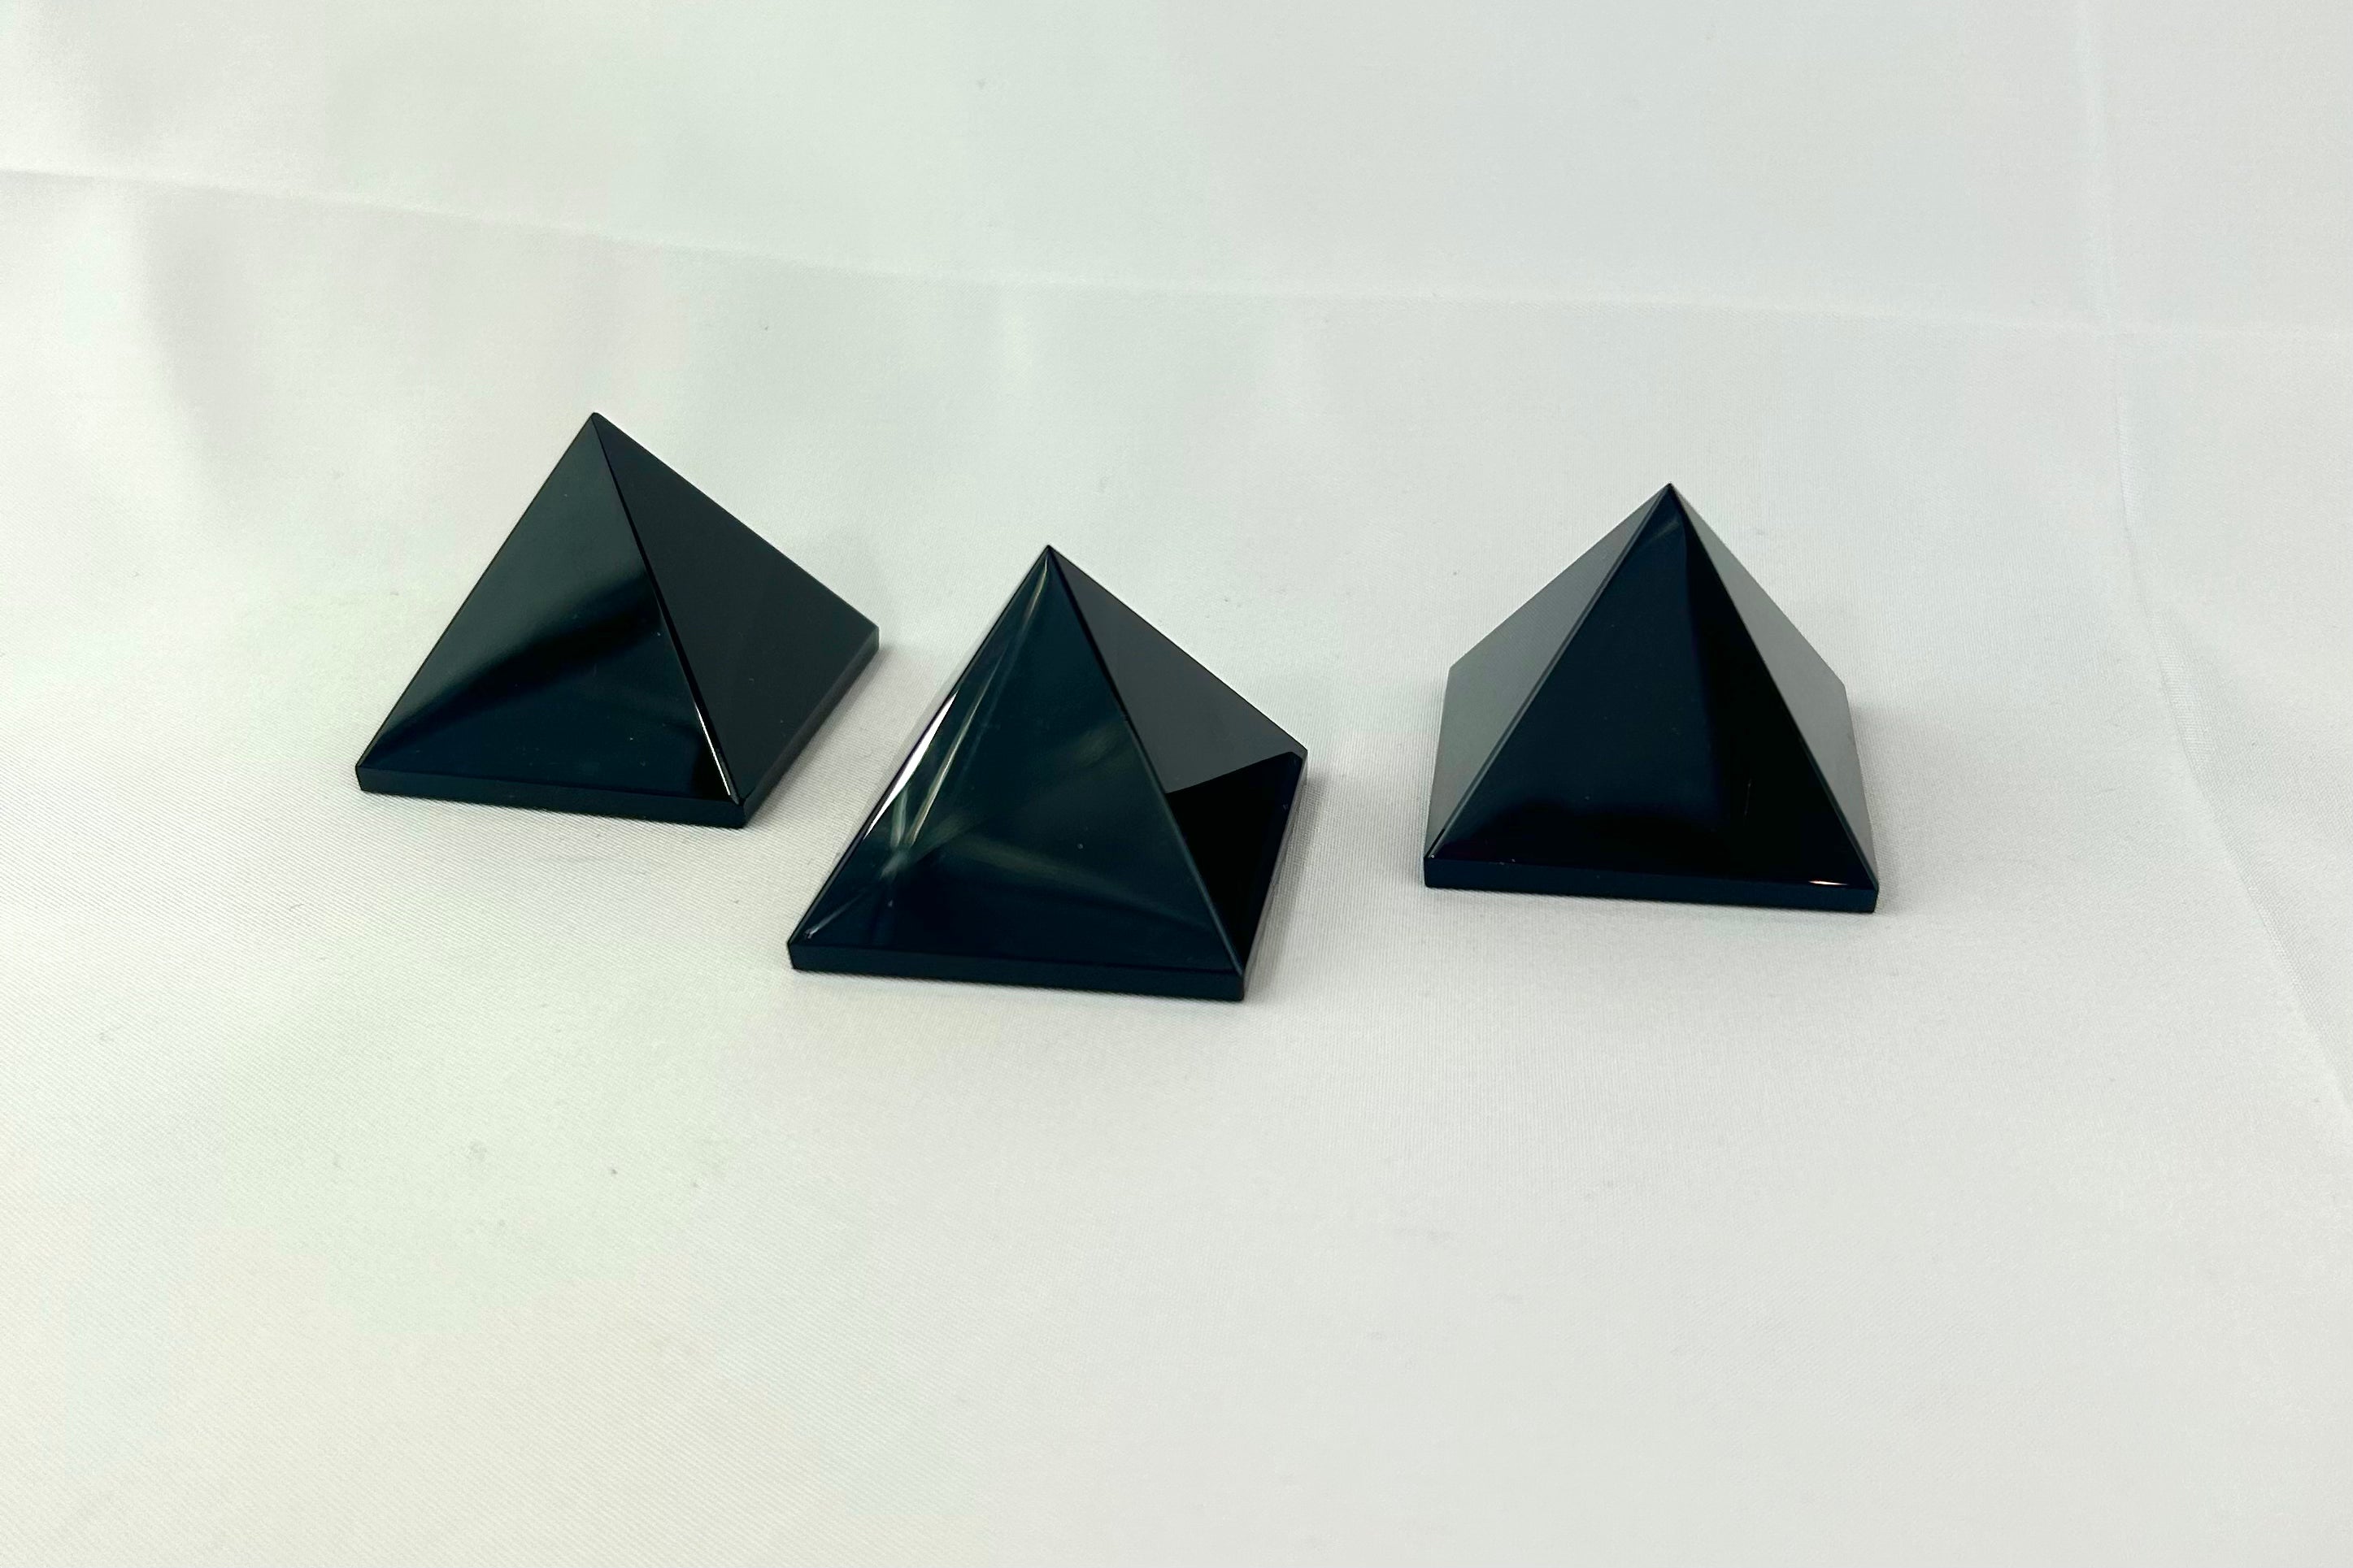 Black Obsidian Pyramid